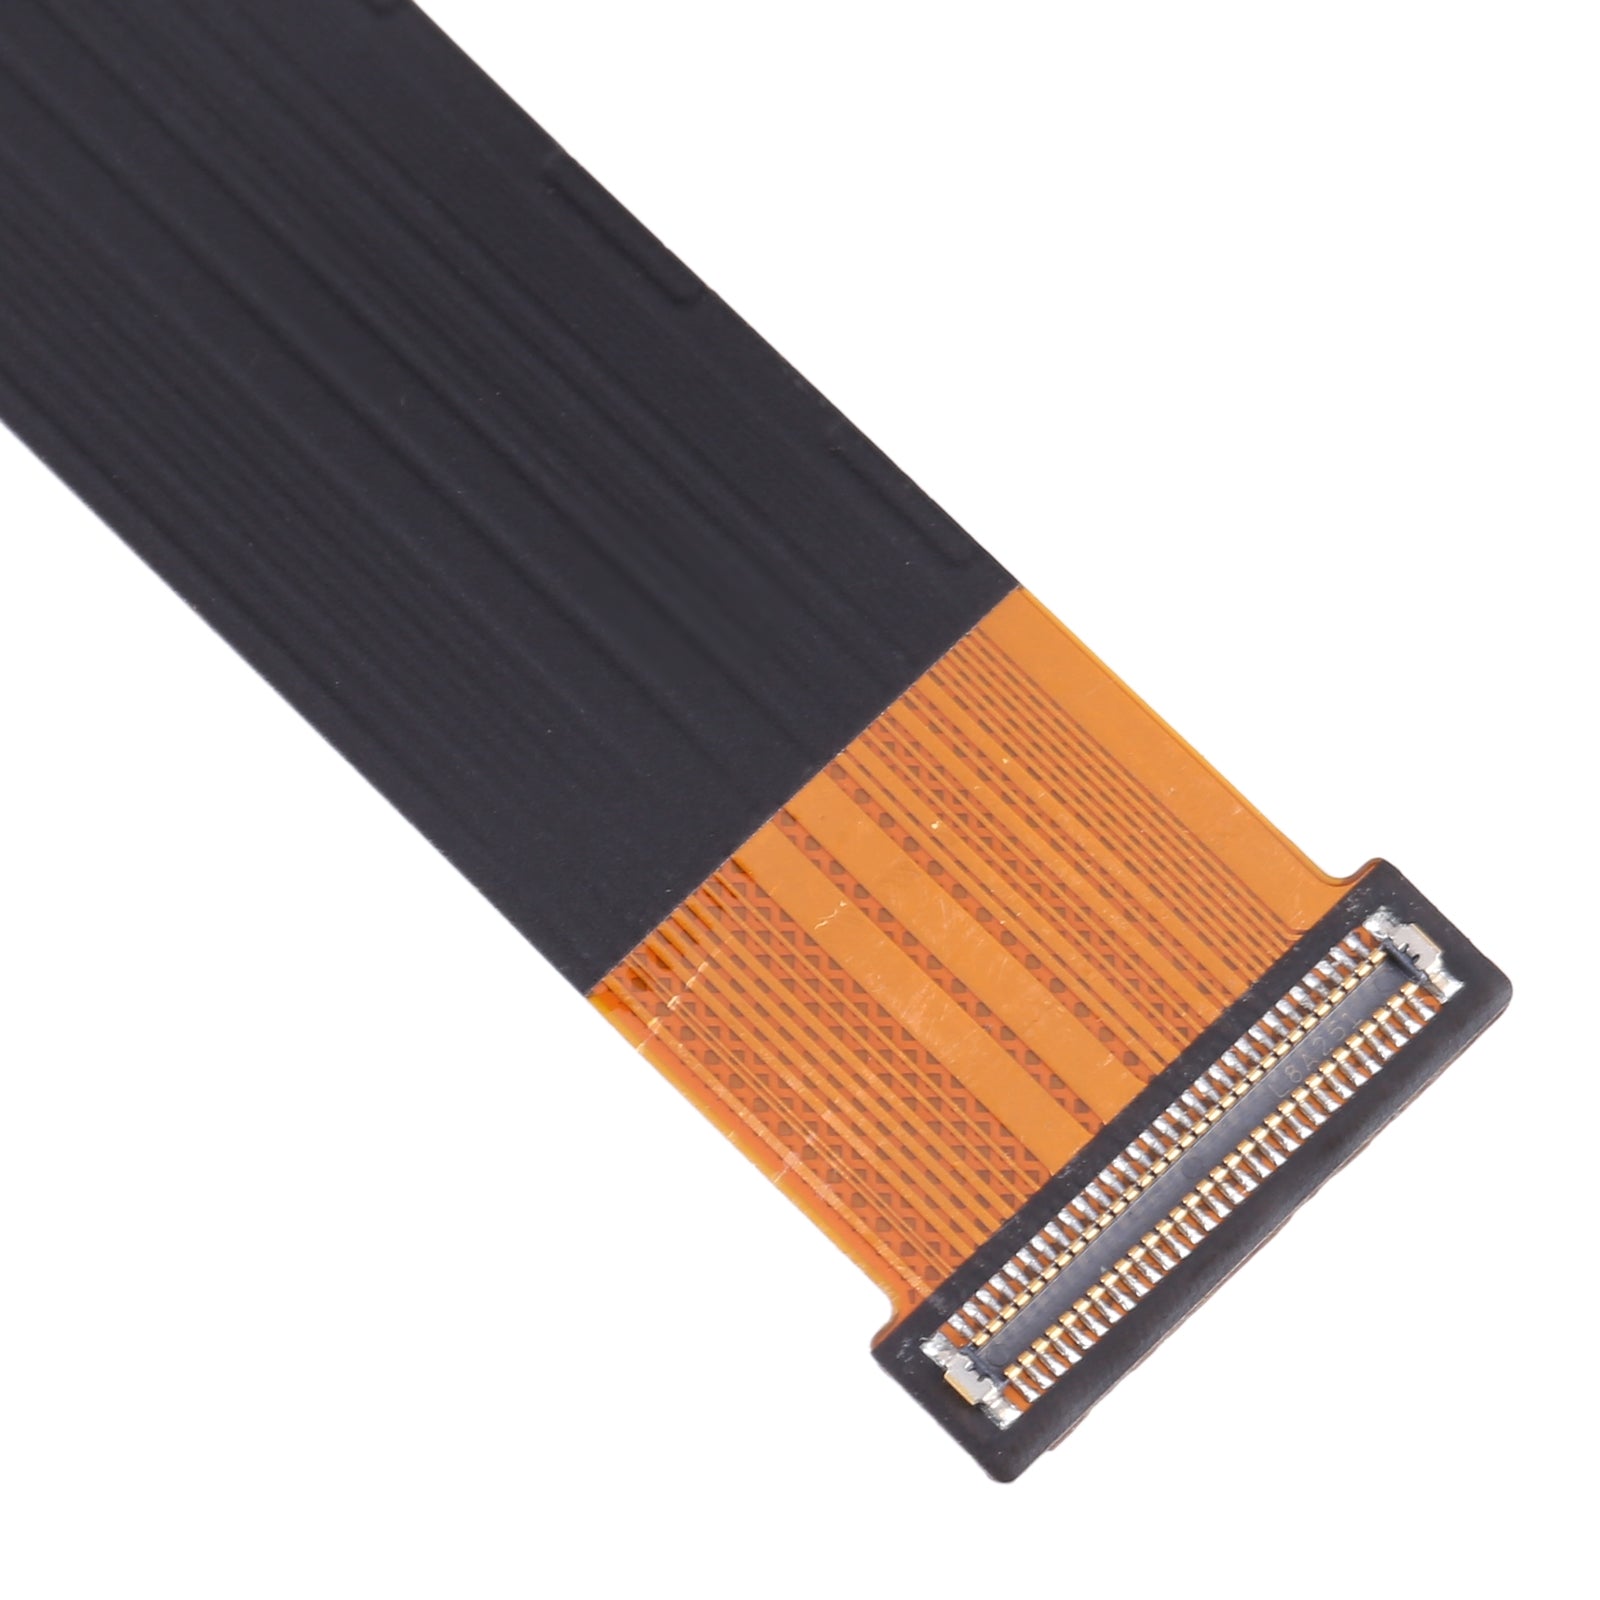 Lenovo Z6 Pro L78051 Board Connector Flex Cable